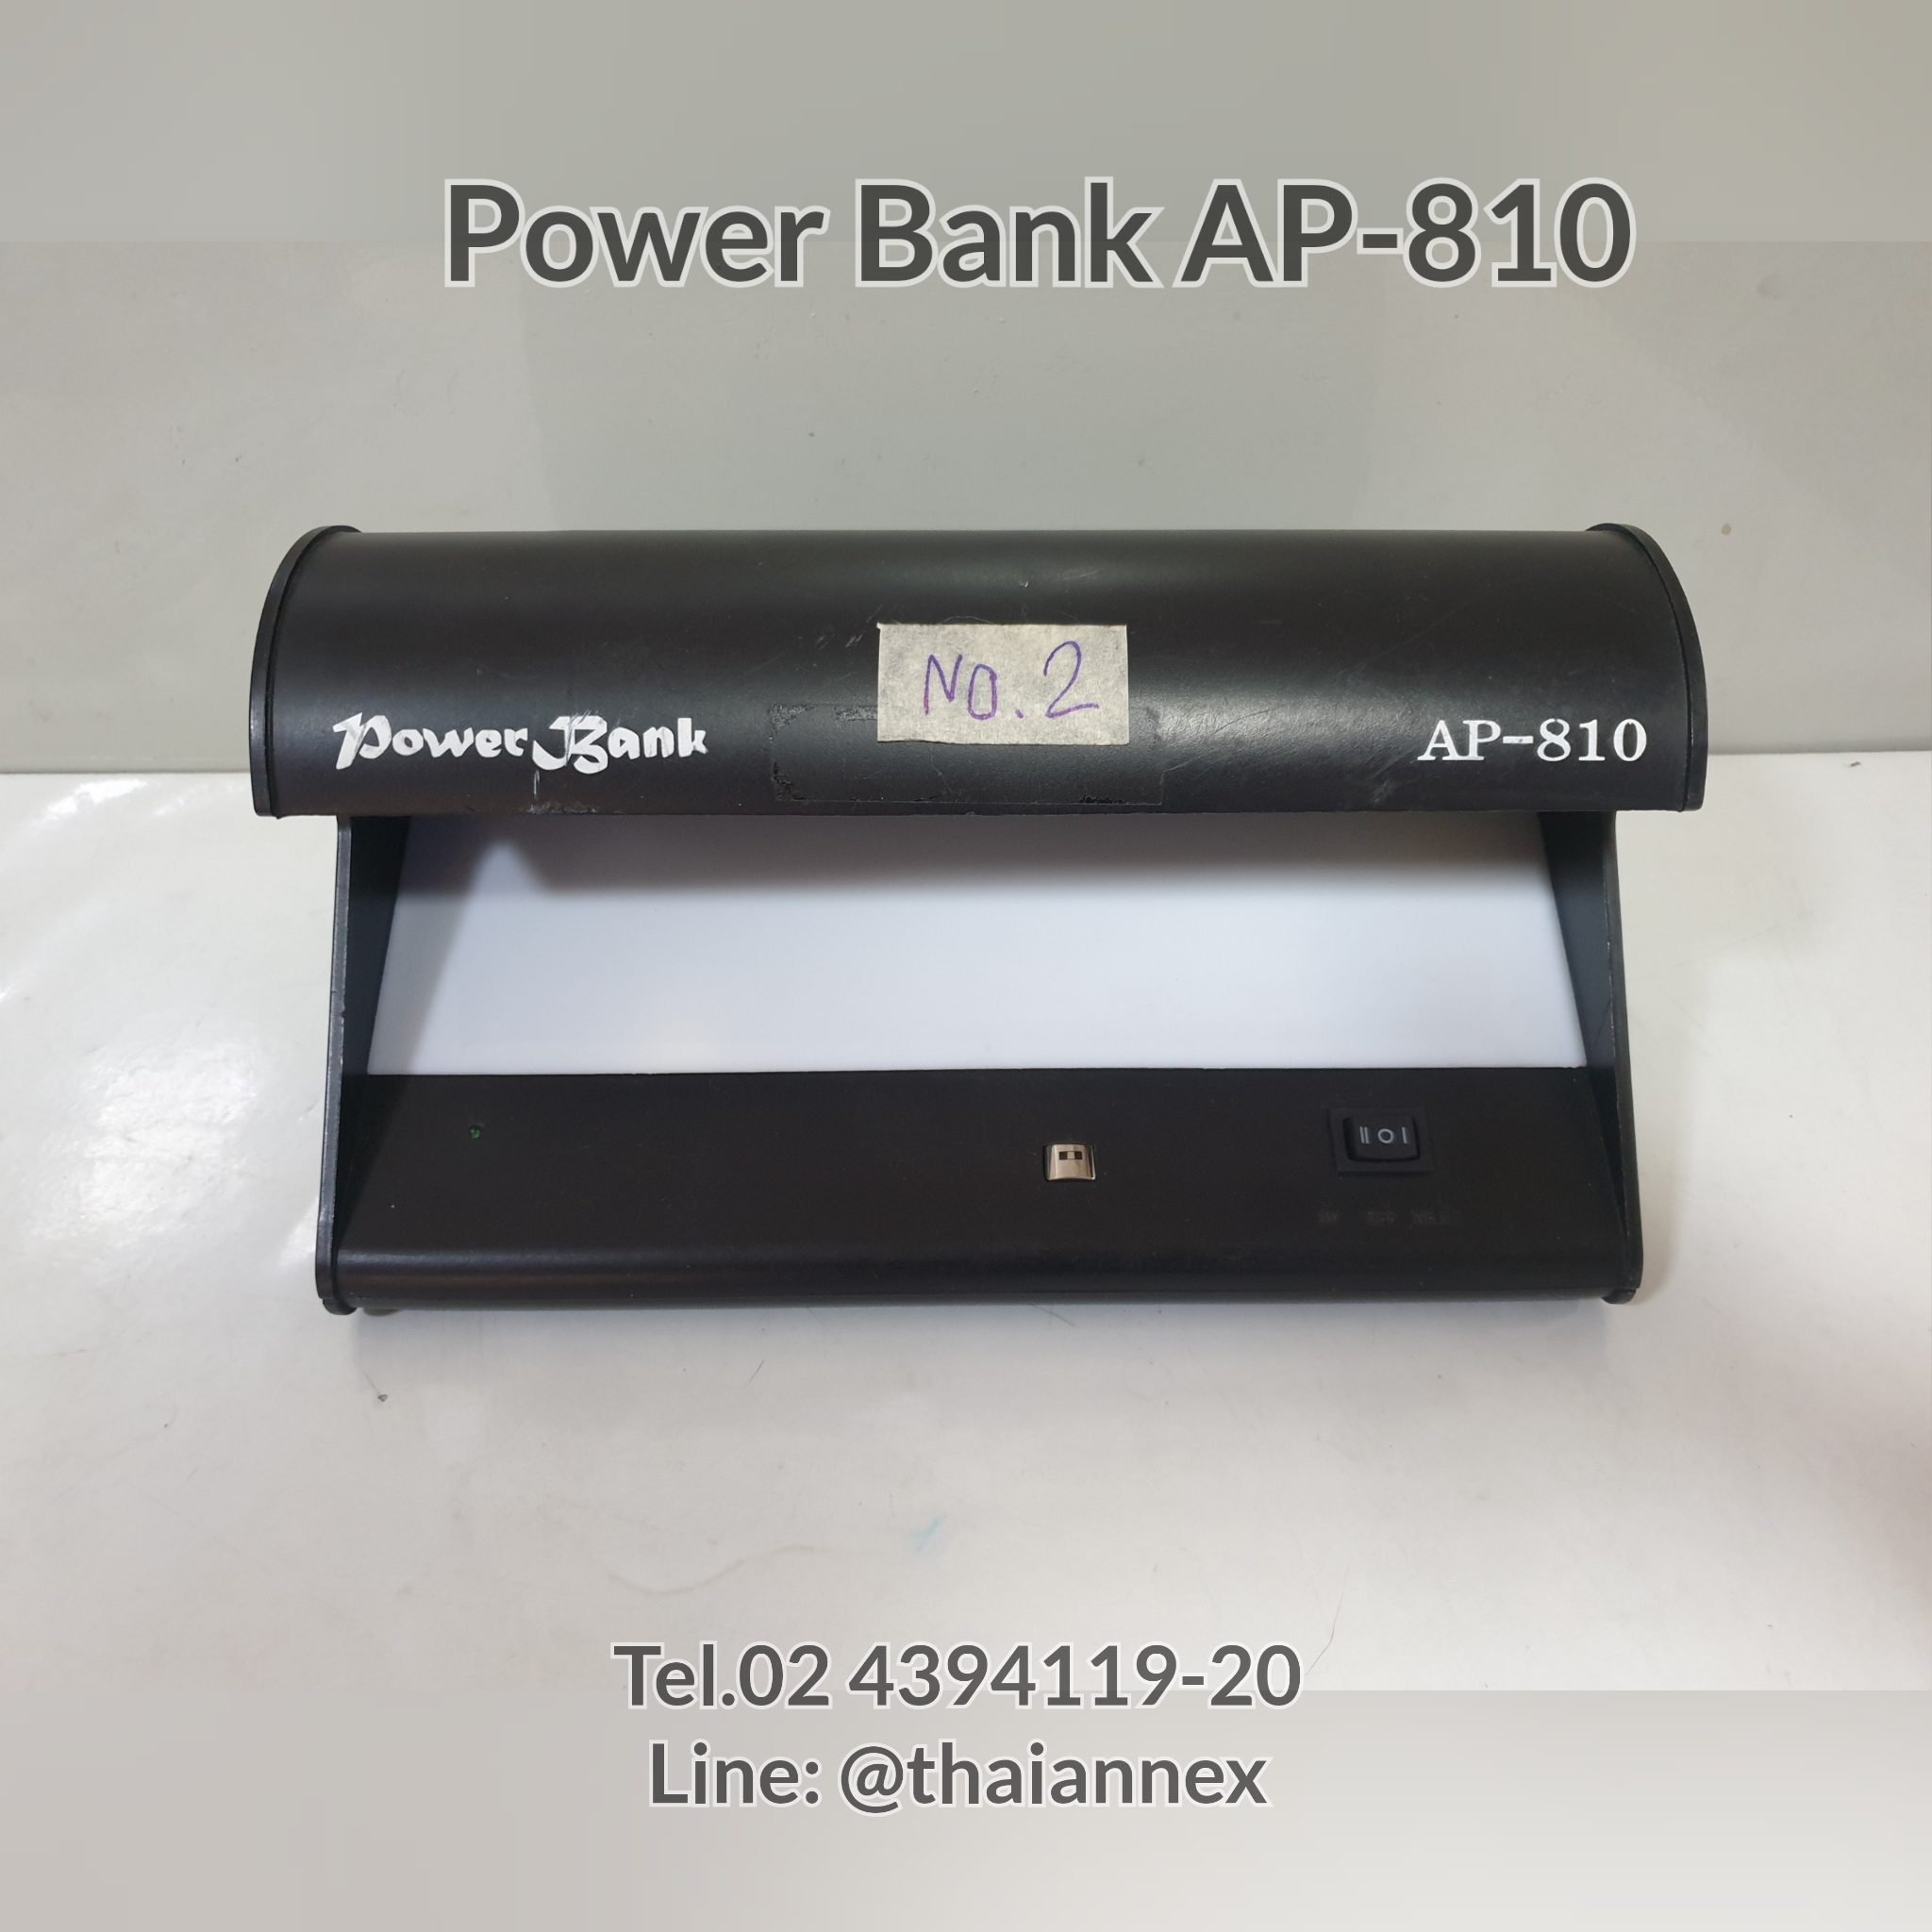 เครื่องตรวจธนบัตร Power Bank AP-810 (เครื่องที่ 2)